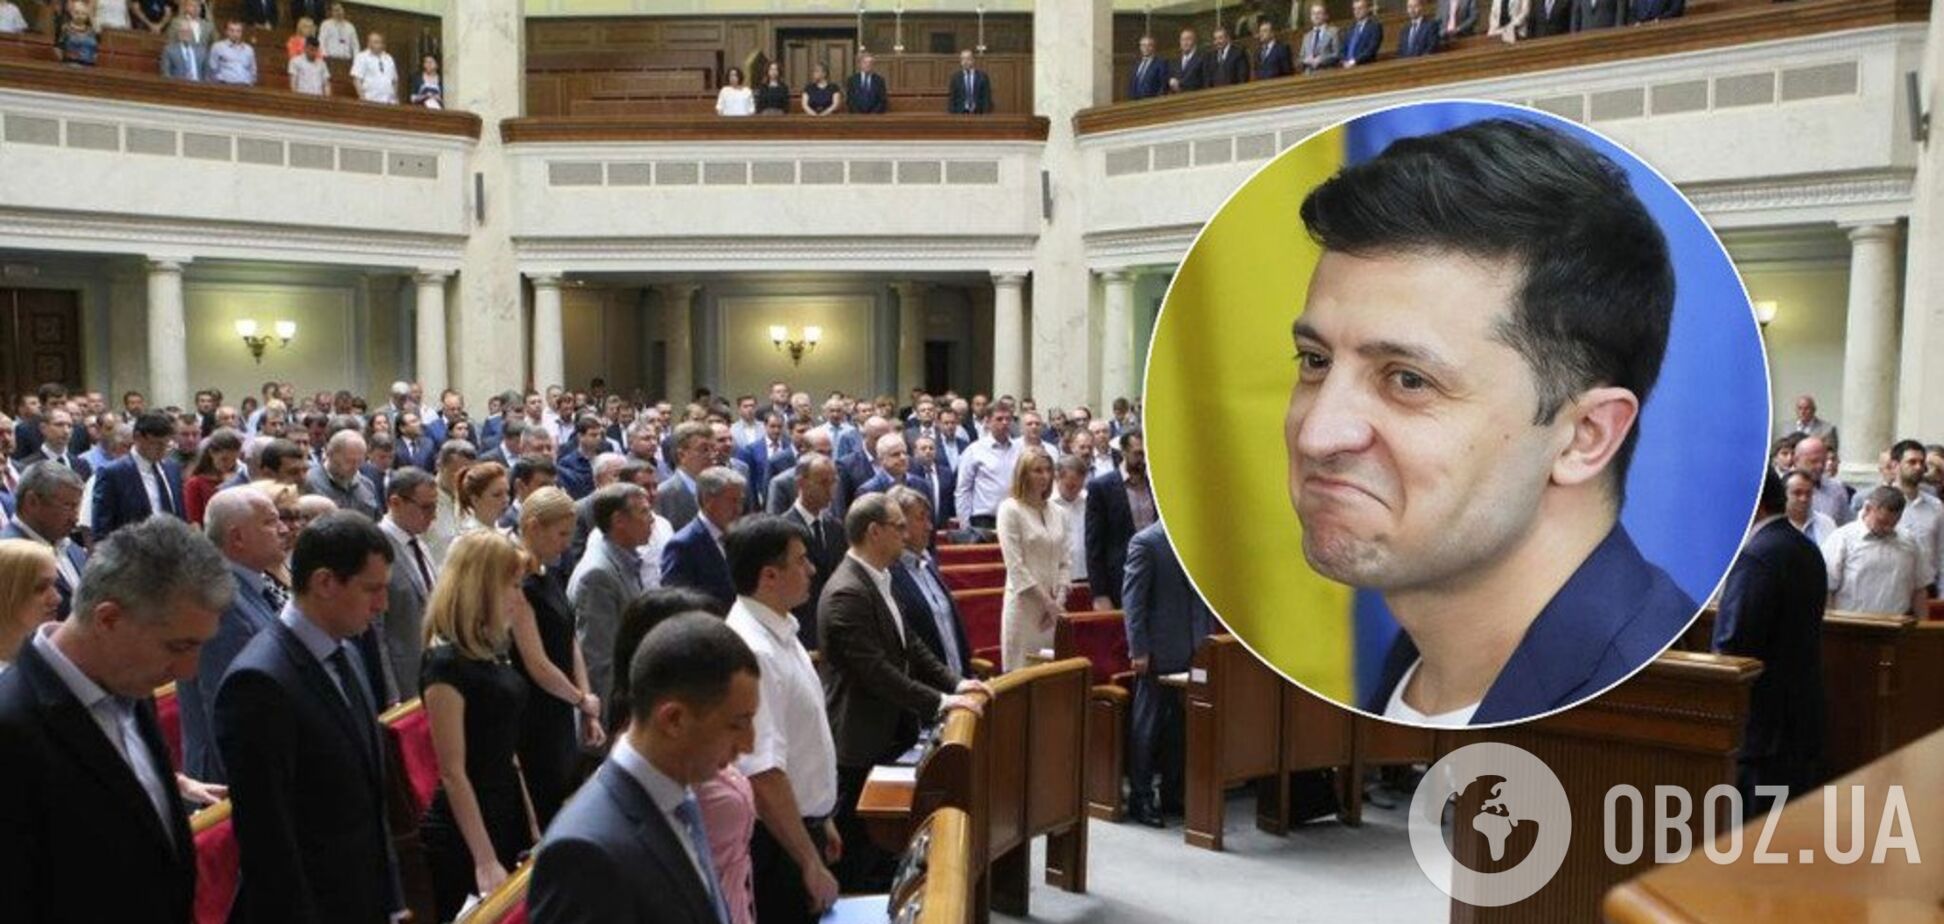 Посадити нардепів: Зеленський підготував для Ради два жорсткі законопроекти